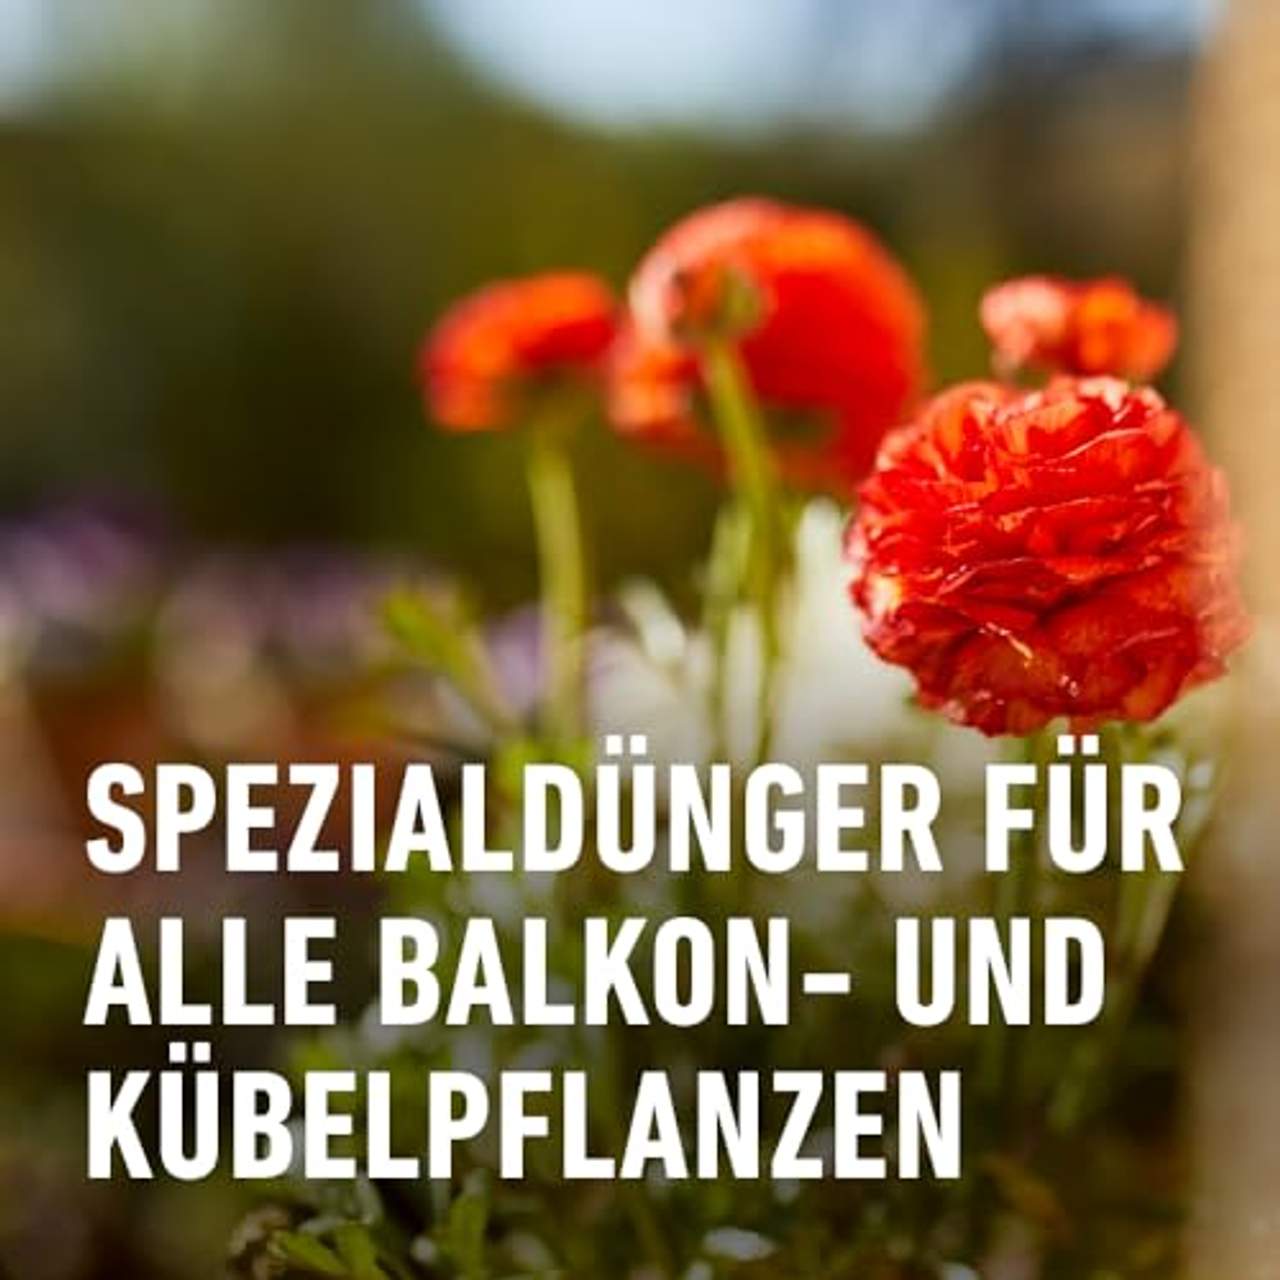 Compo Balkon- und Kübelpflanzendünger